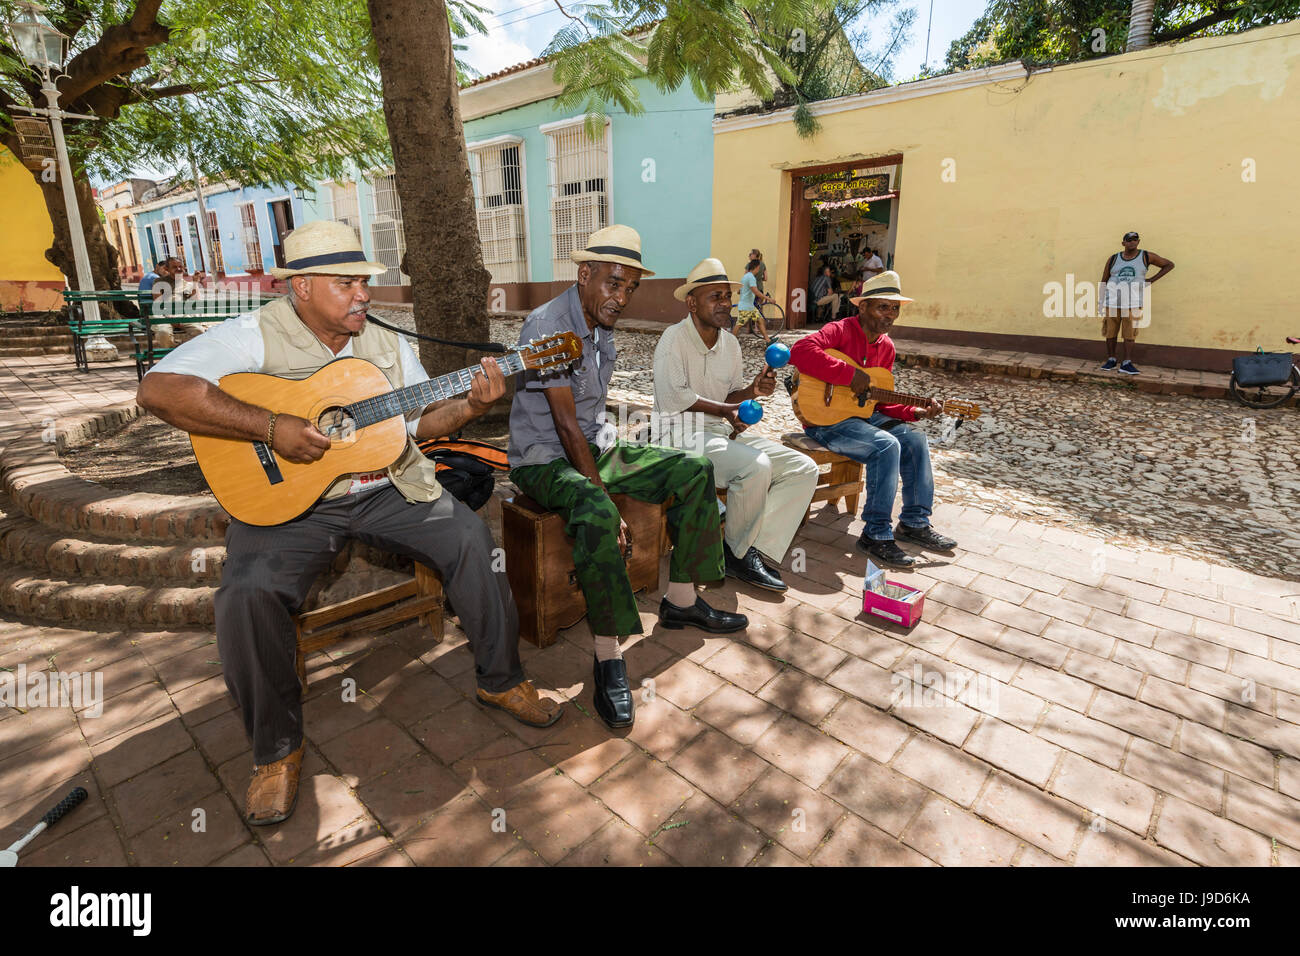 Straßenkünstler spielen in der Stadt von Trinidad, UNESCO World Heritage Site, Kuba, West Indies, Karibik, Mittelamerika Stockfoto